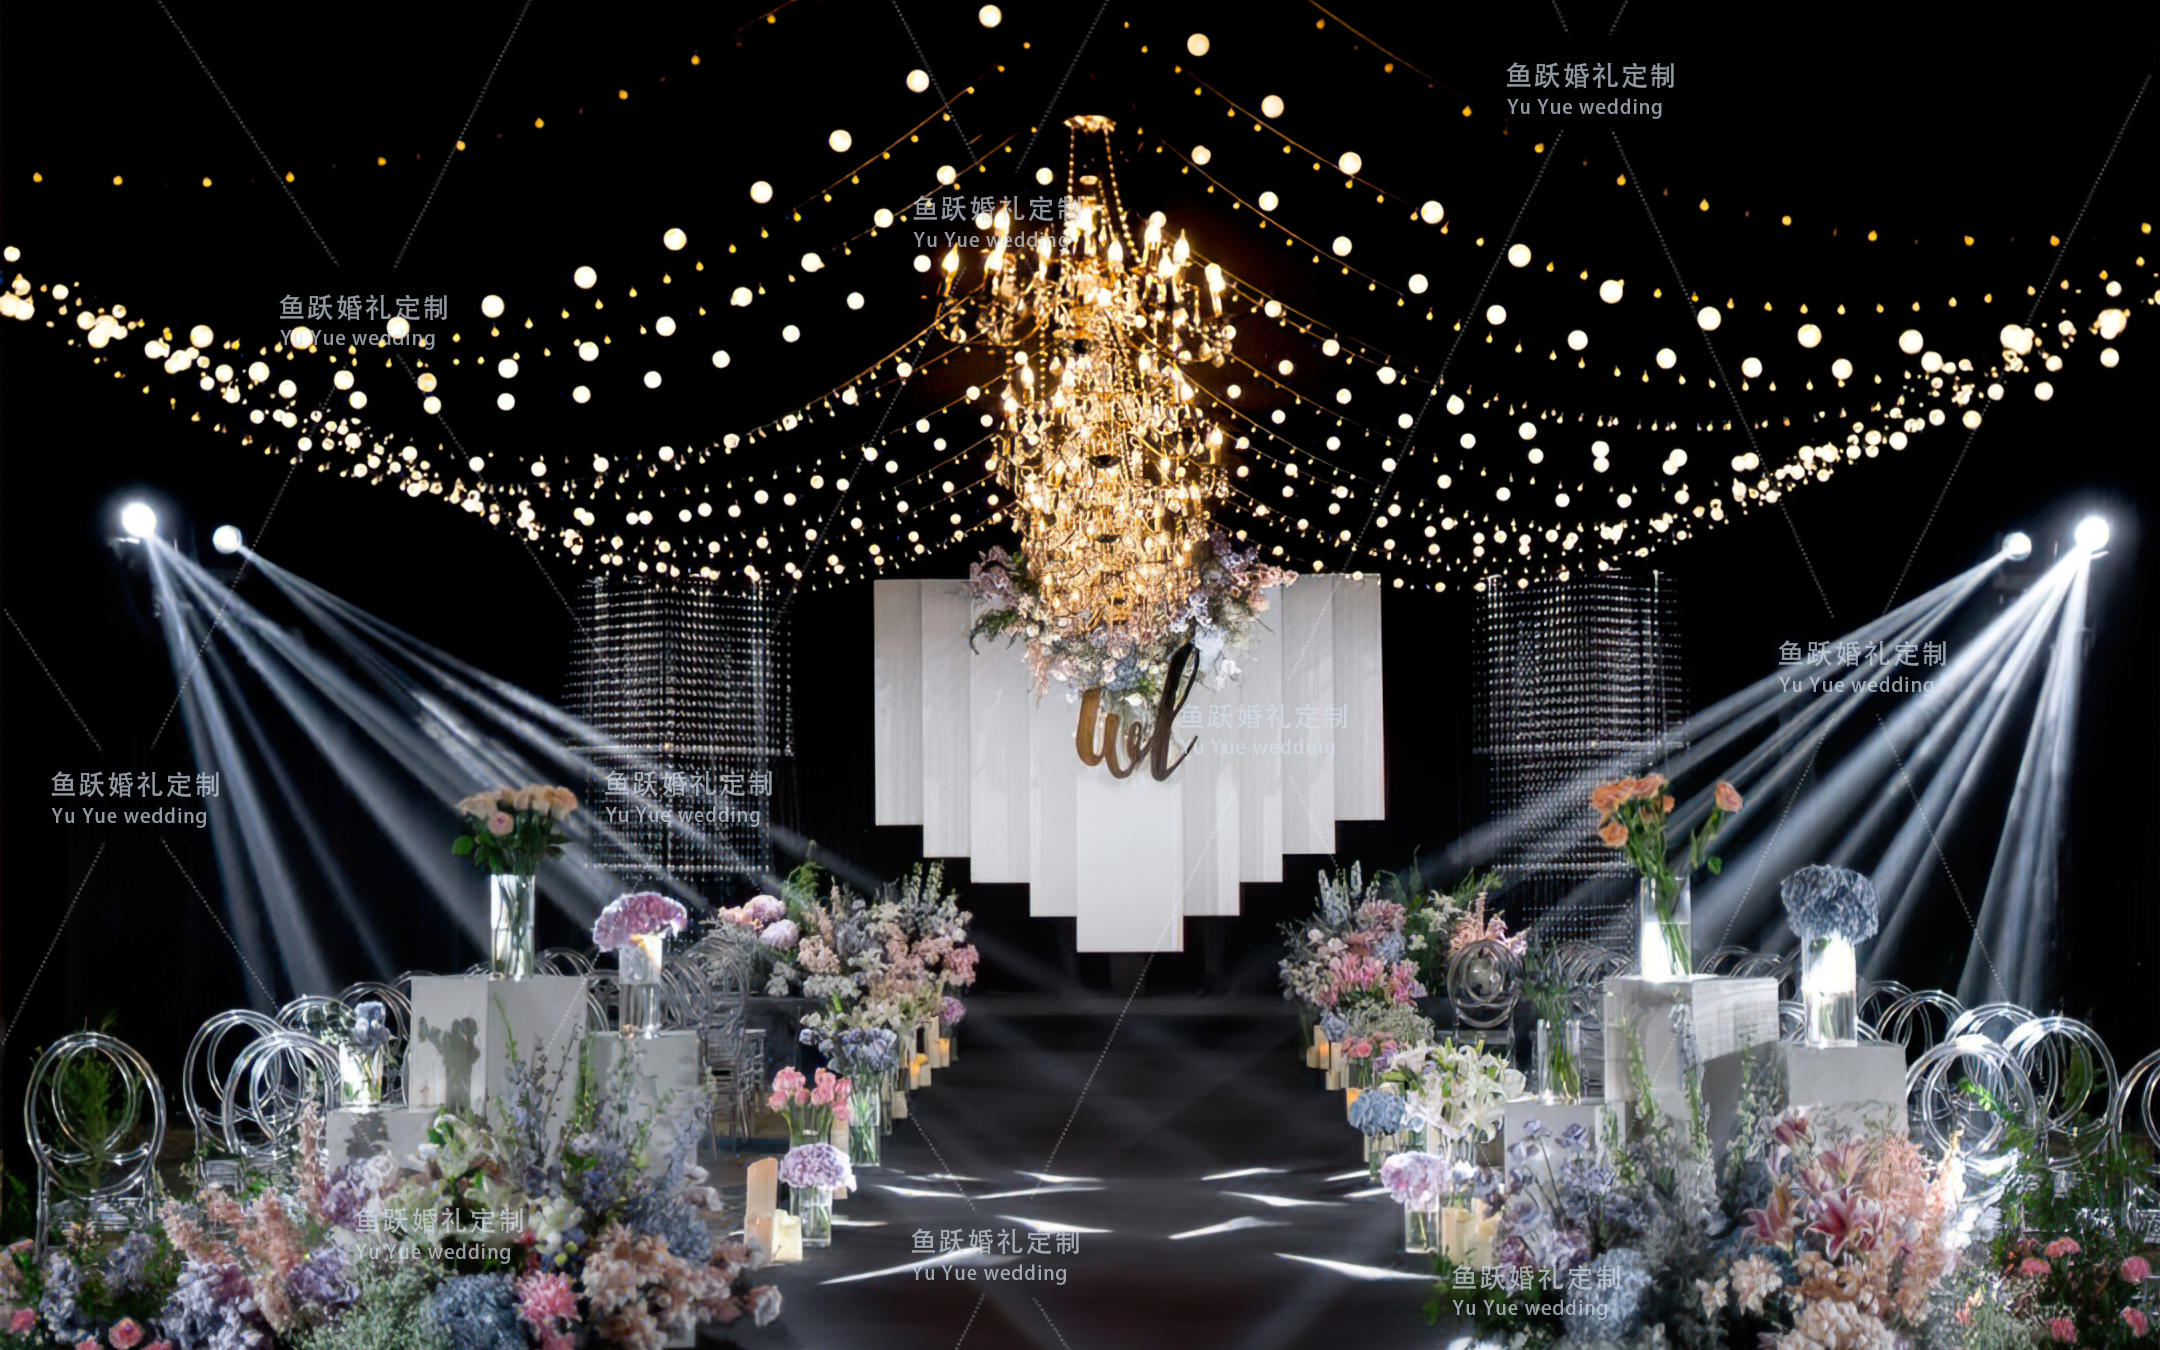 鱼跃婚礼·  法式浪漫结合韩式清新水晶灯吊顶婚礼